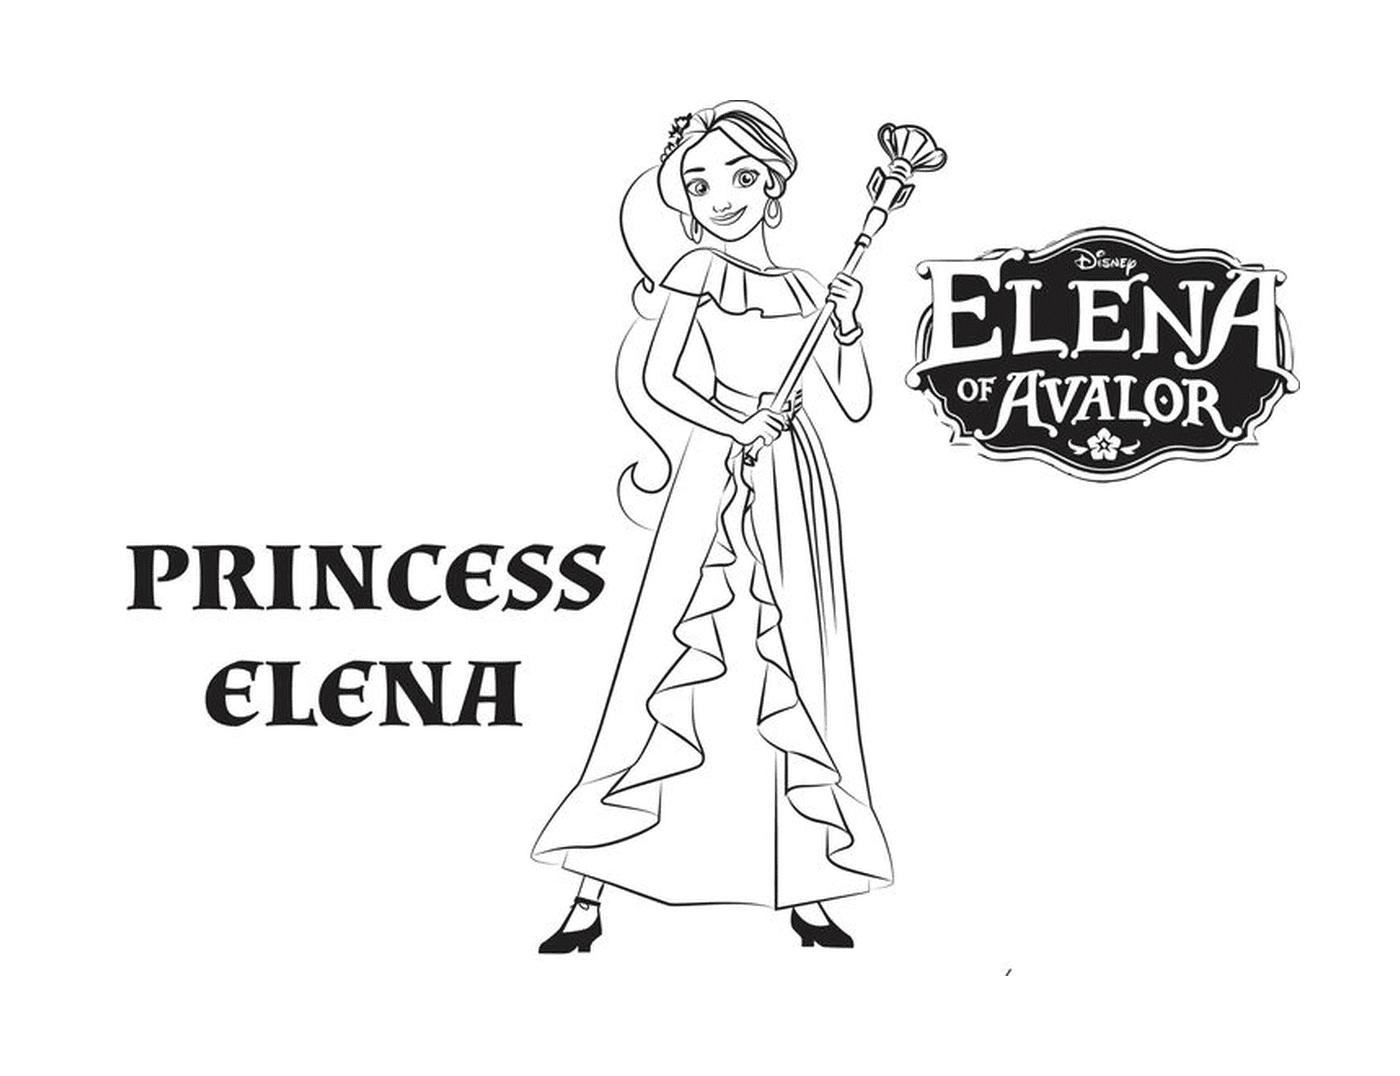  Princess Elena of Disney Avalor 